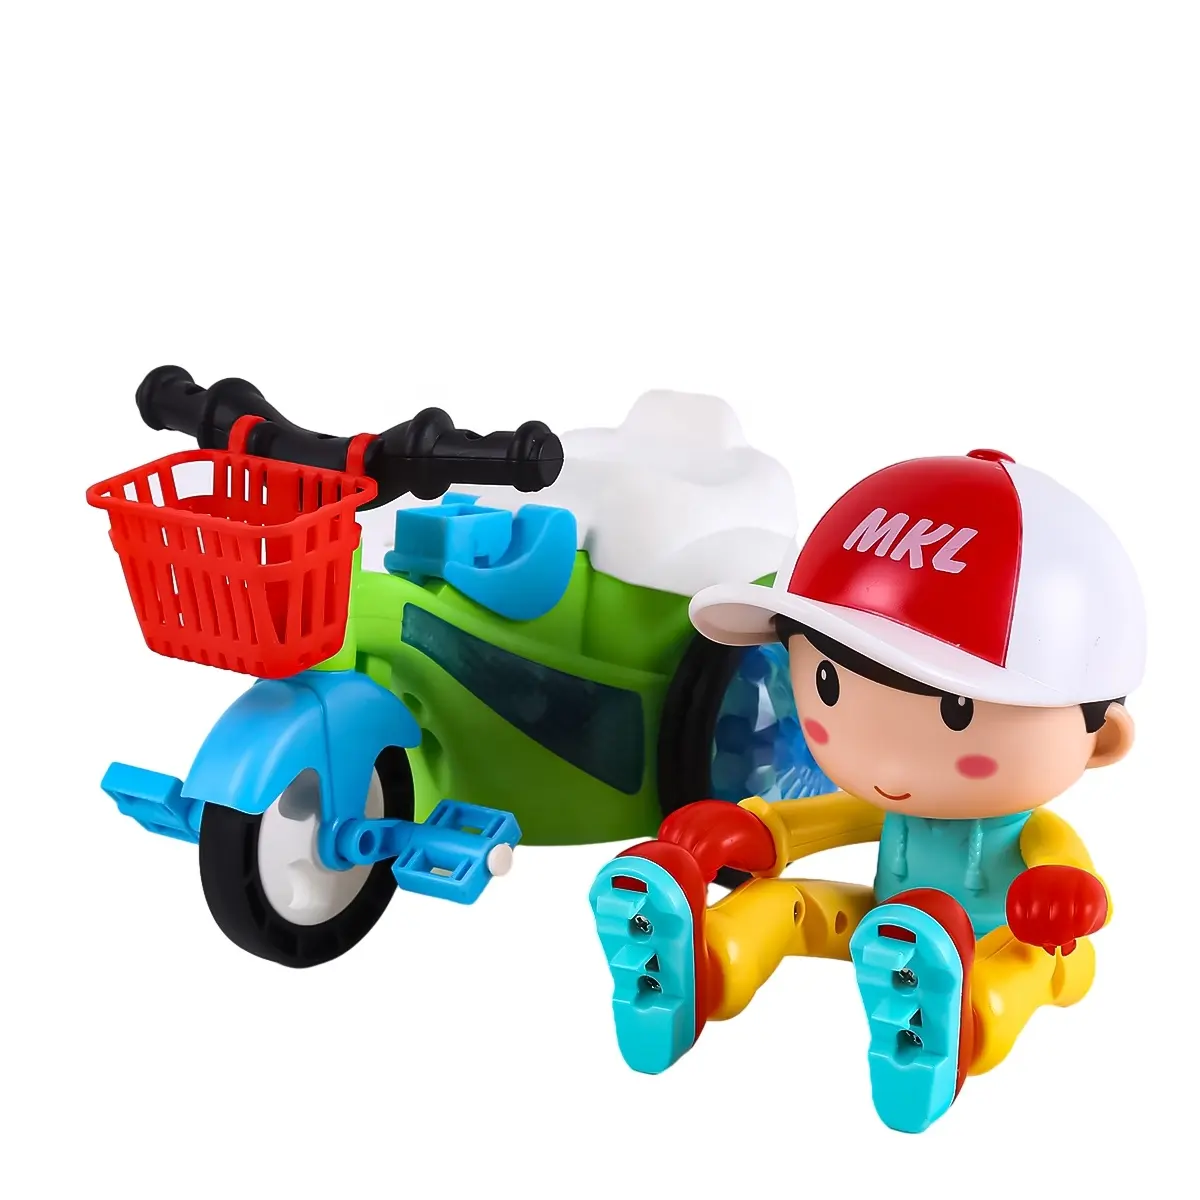 Venta caliente coche de juguete eléctrico Cool triciclo truco coche de juguete 360 Flip luz música niño y niña regalo